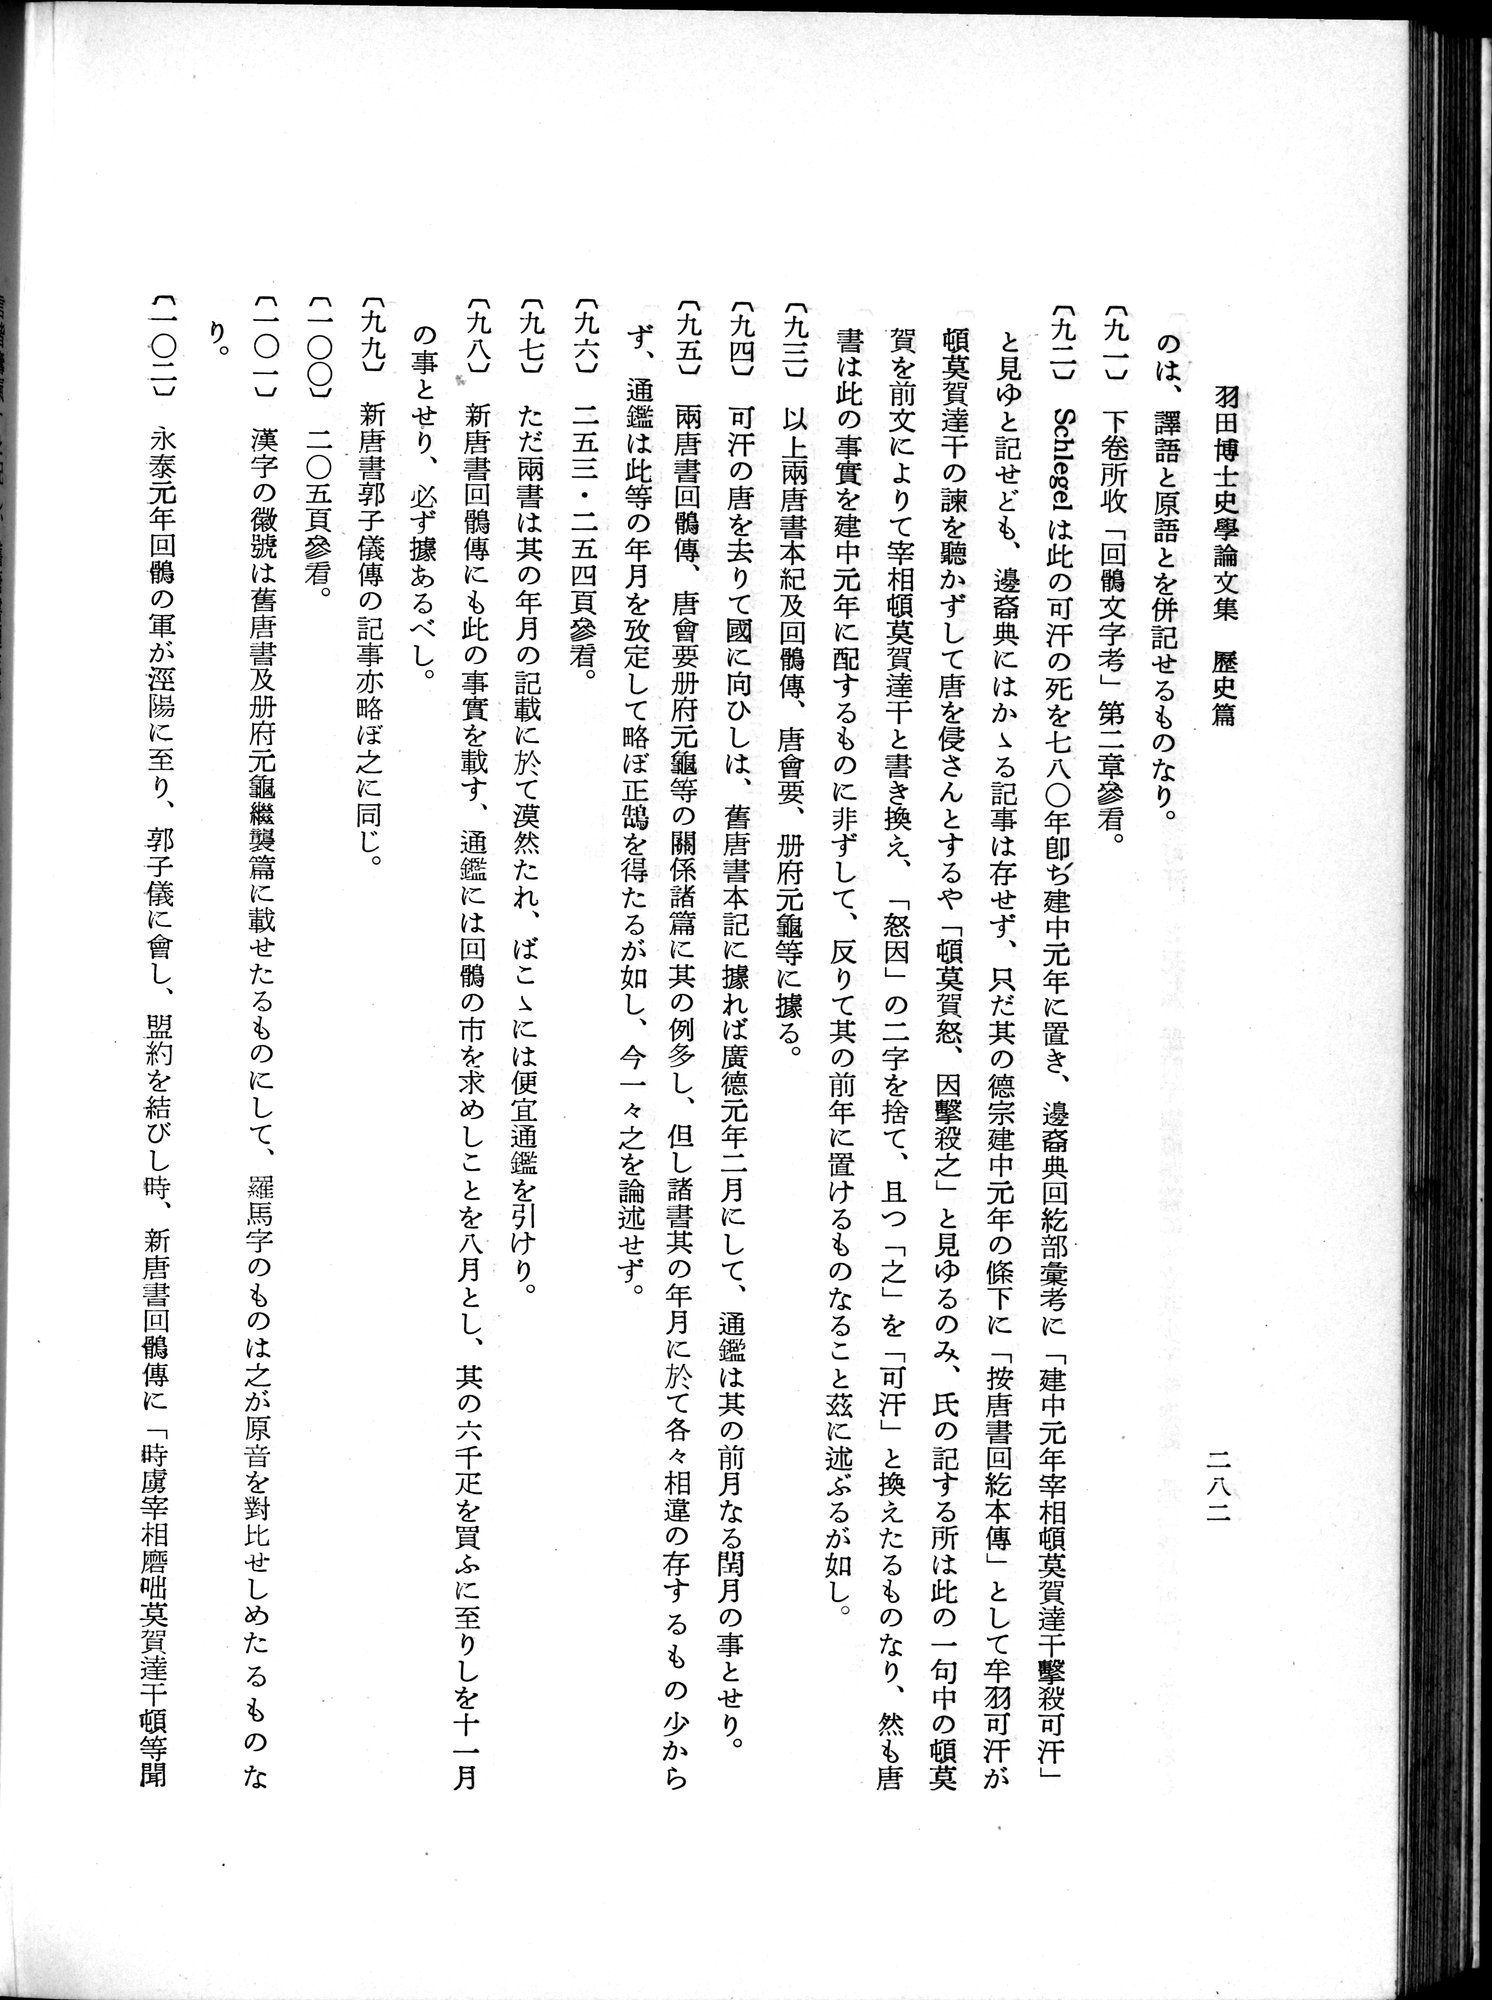 羽田博士史学論文集 : vol.1 / Page 320 (Grayscale High Resolution Image)